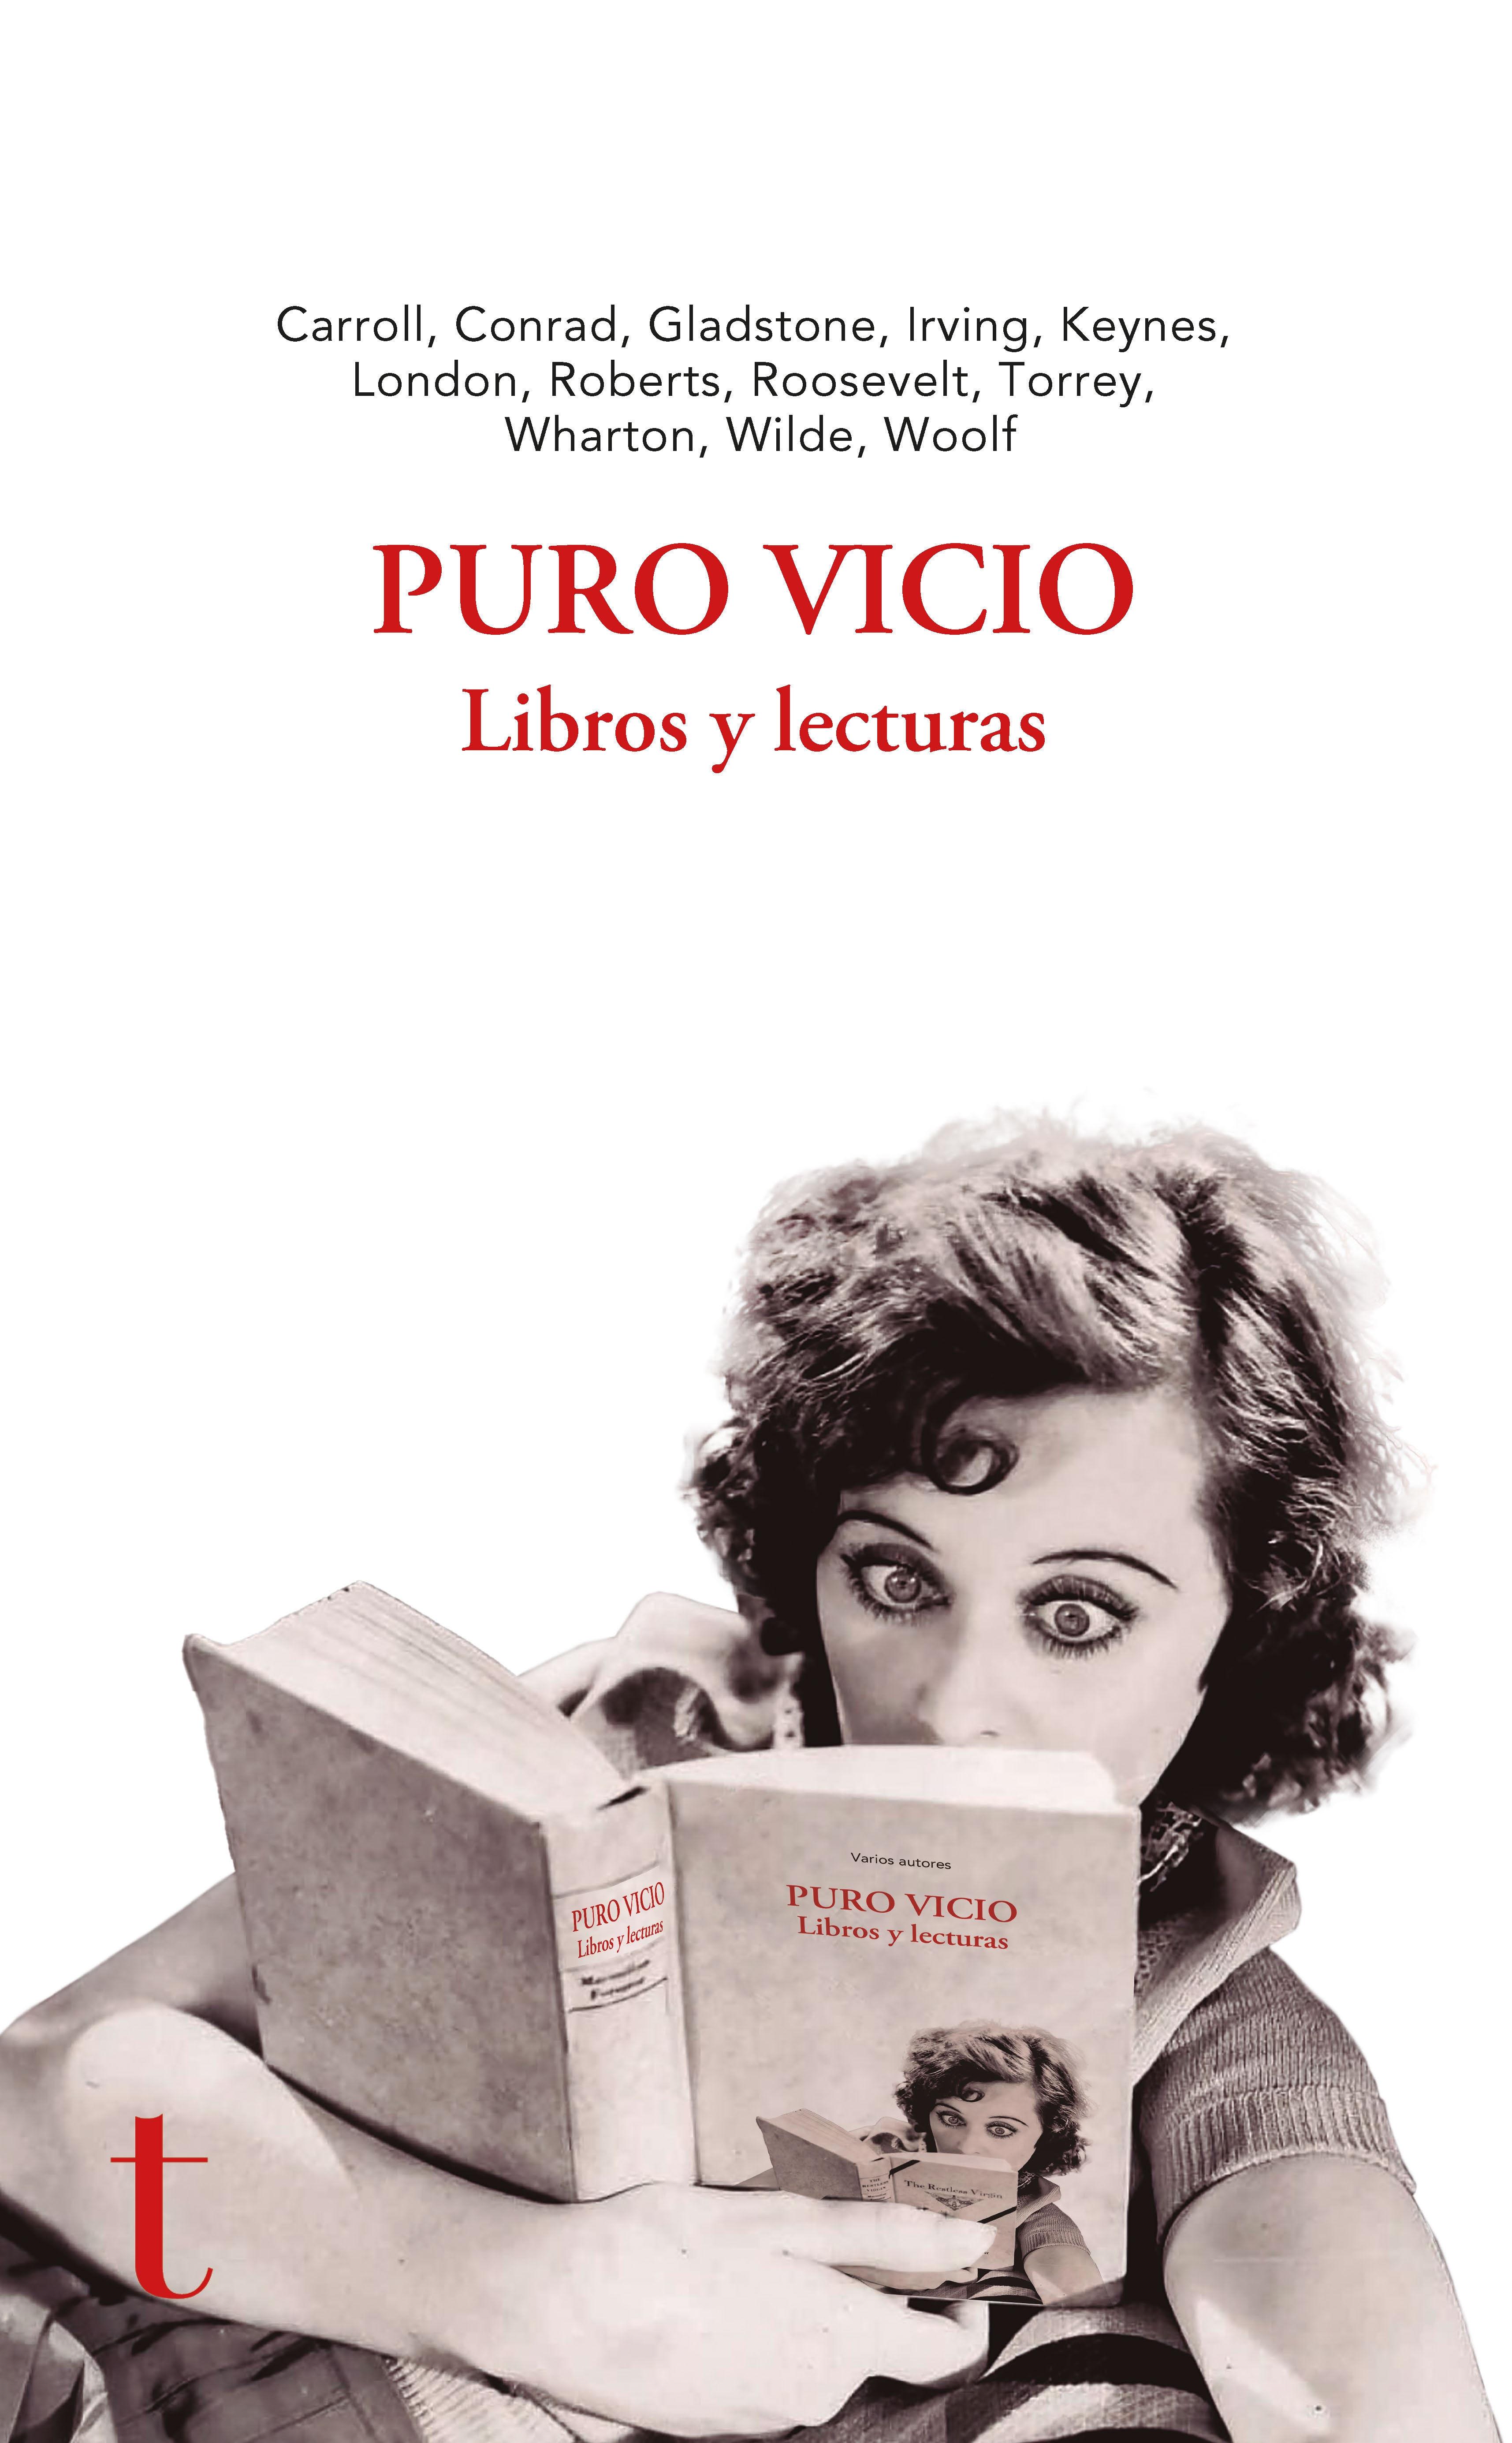 PURO VICIO "LIBROS Y LECTURAS"